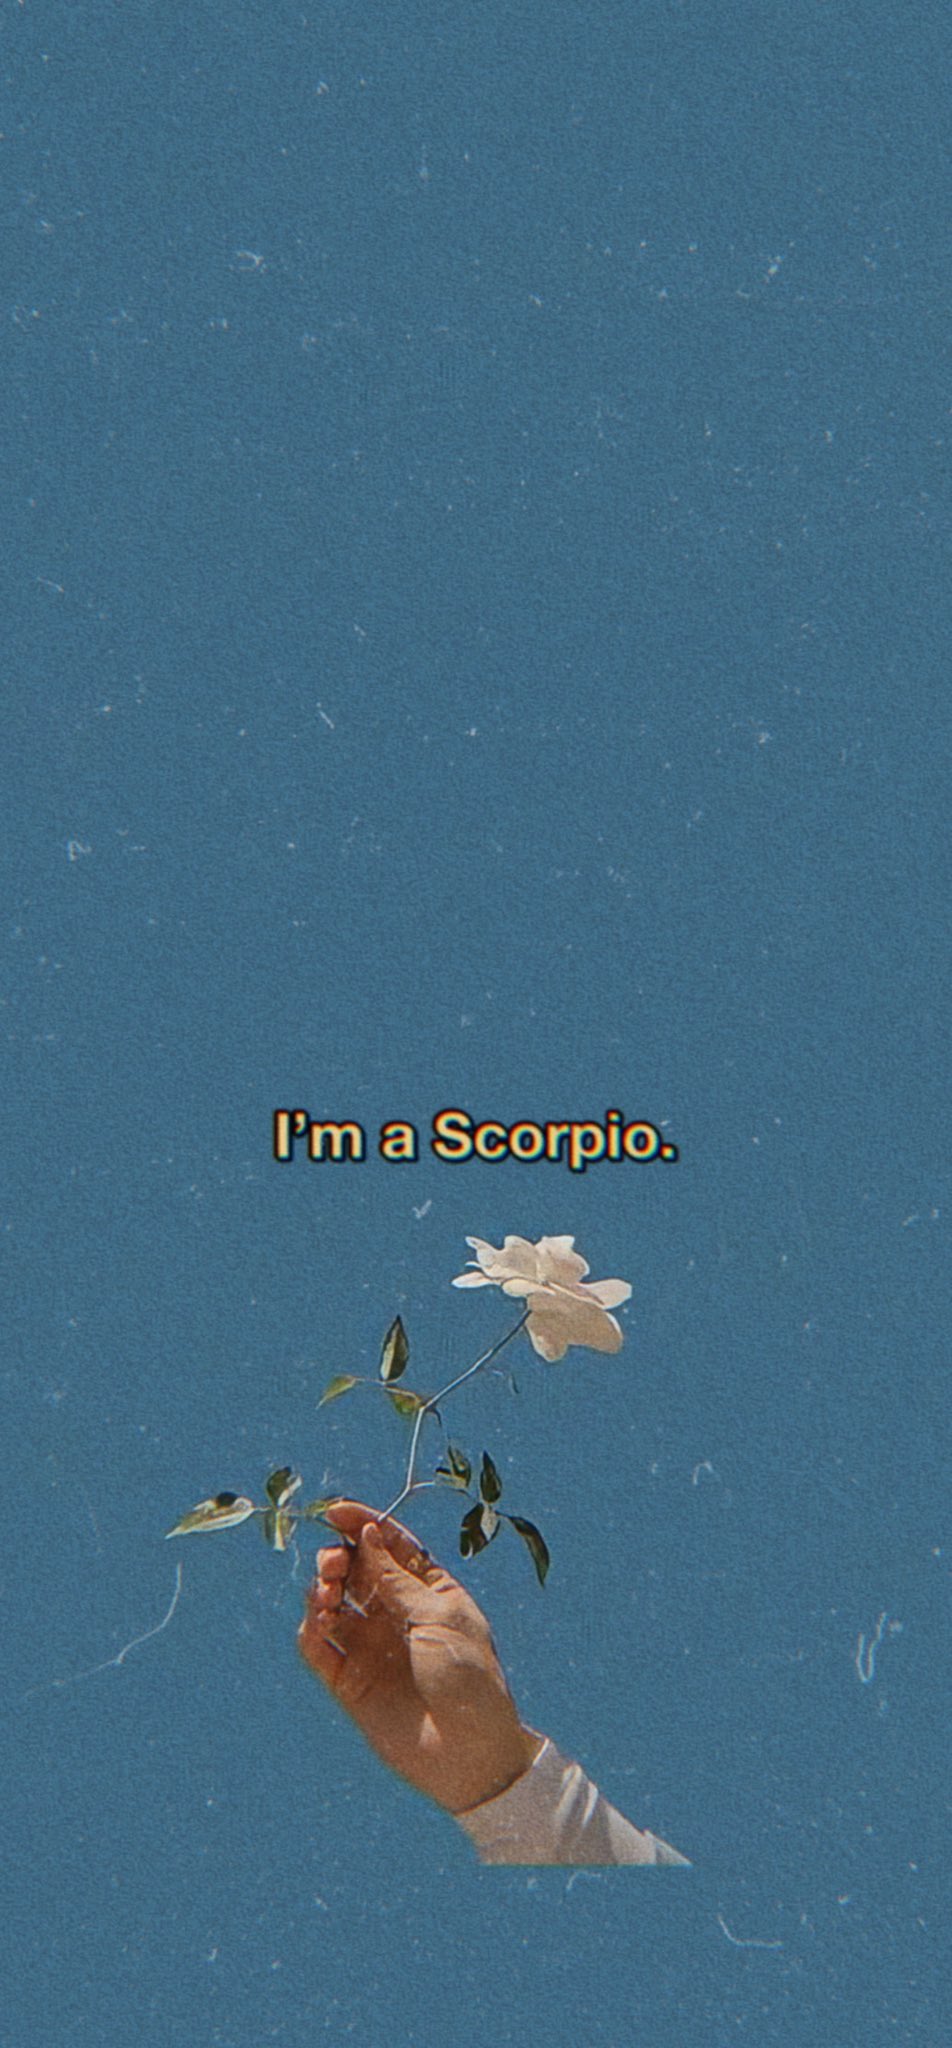 Jo wallpaper “I'm a Scorpio.” kind of mood #Scorpio #scorpiogirl #Scorpion #wallpaper #aesthetic #aestheticmood #blue